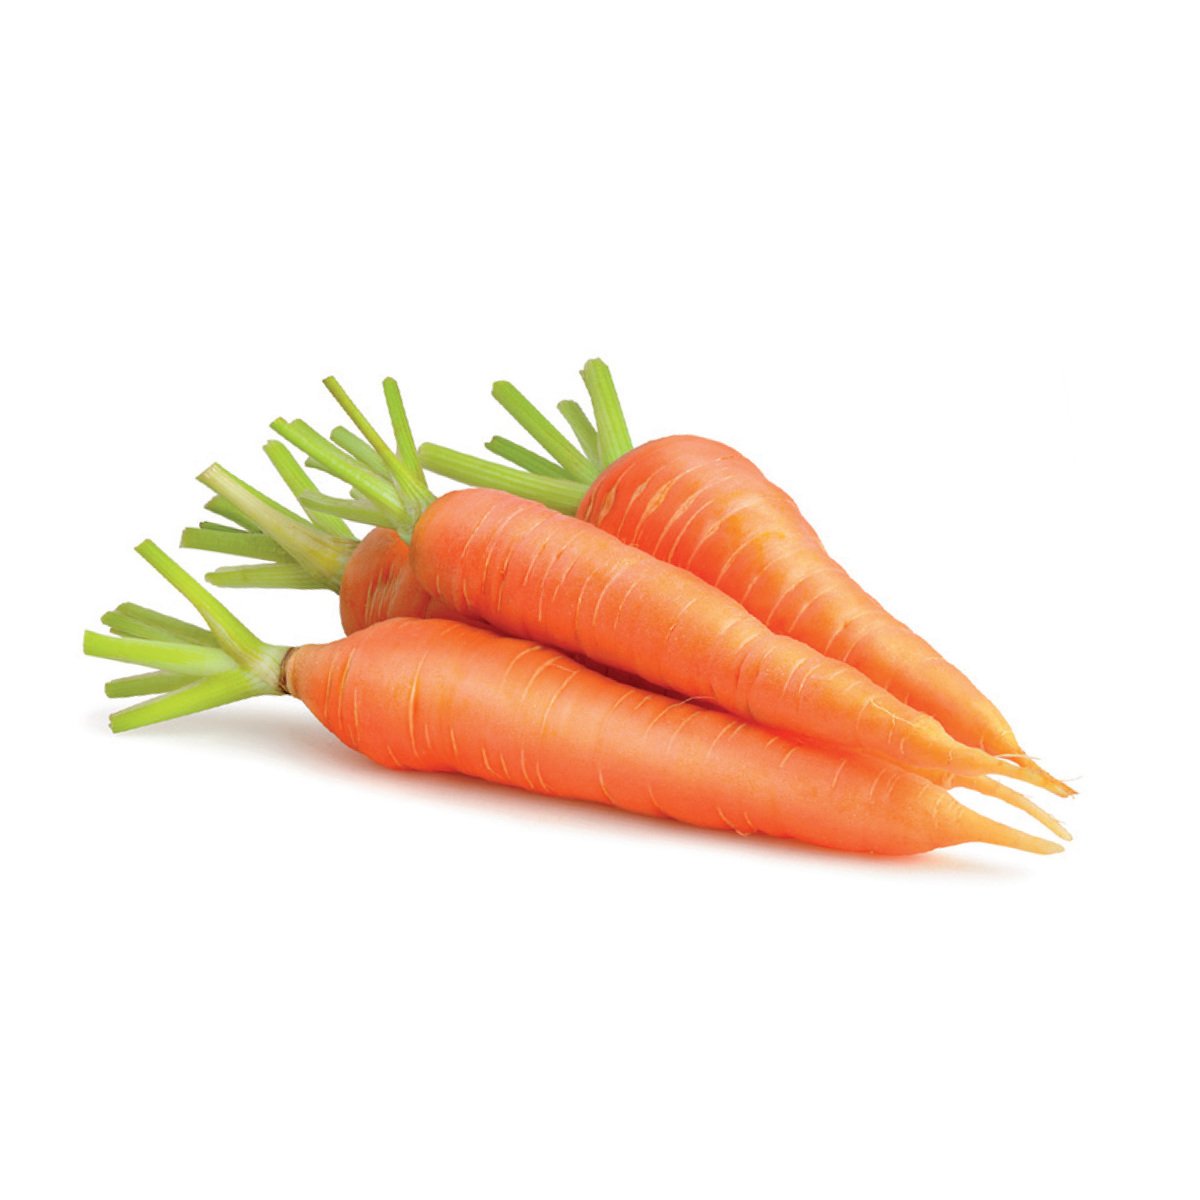 Buy Carrots Nawami Saudi 1pkt Online at Best Price | Carrot | Lulu KSA in Saudi Arabia